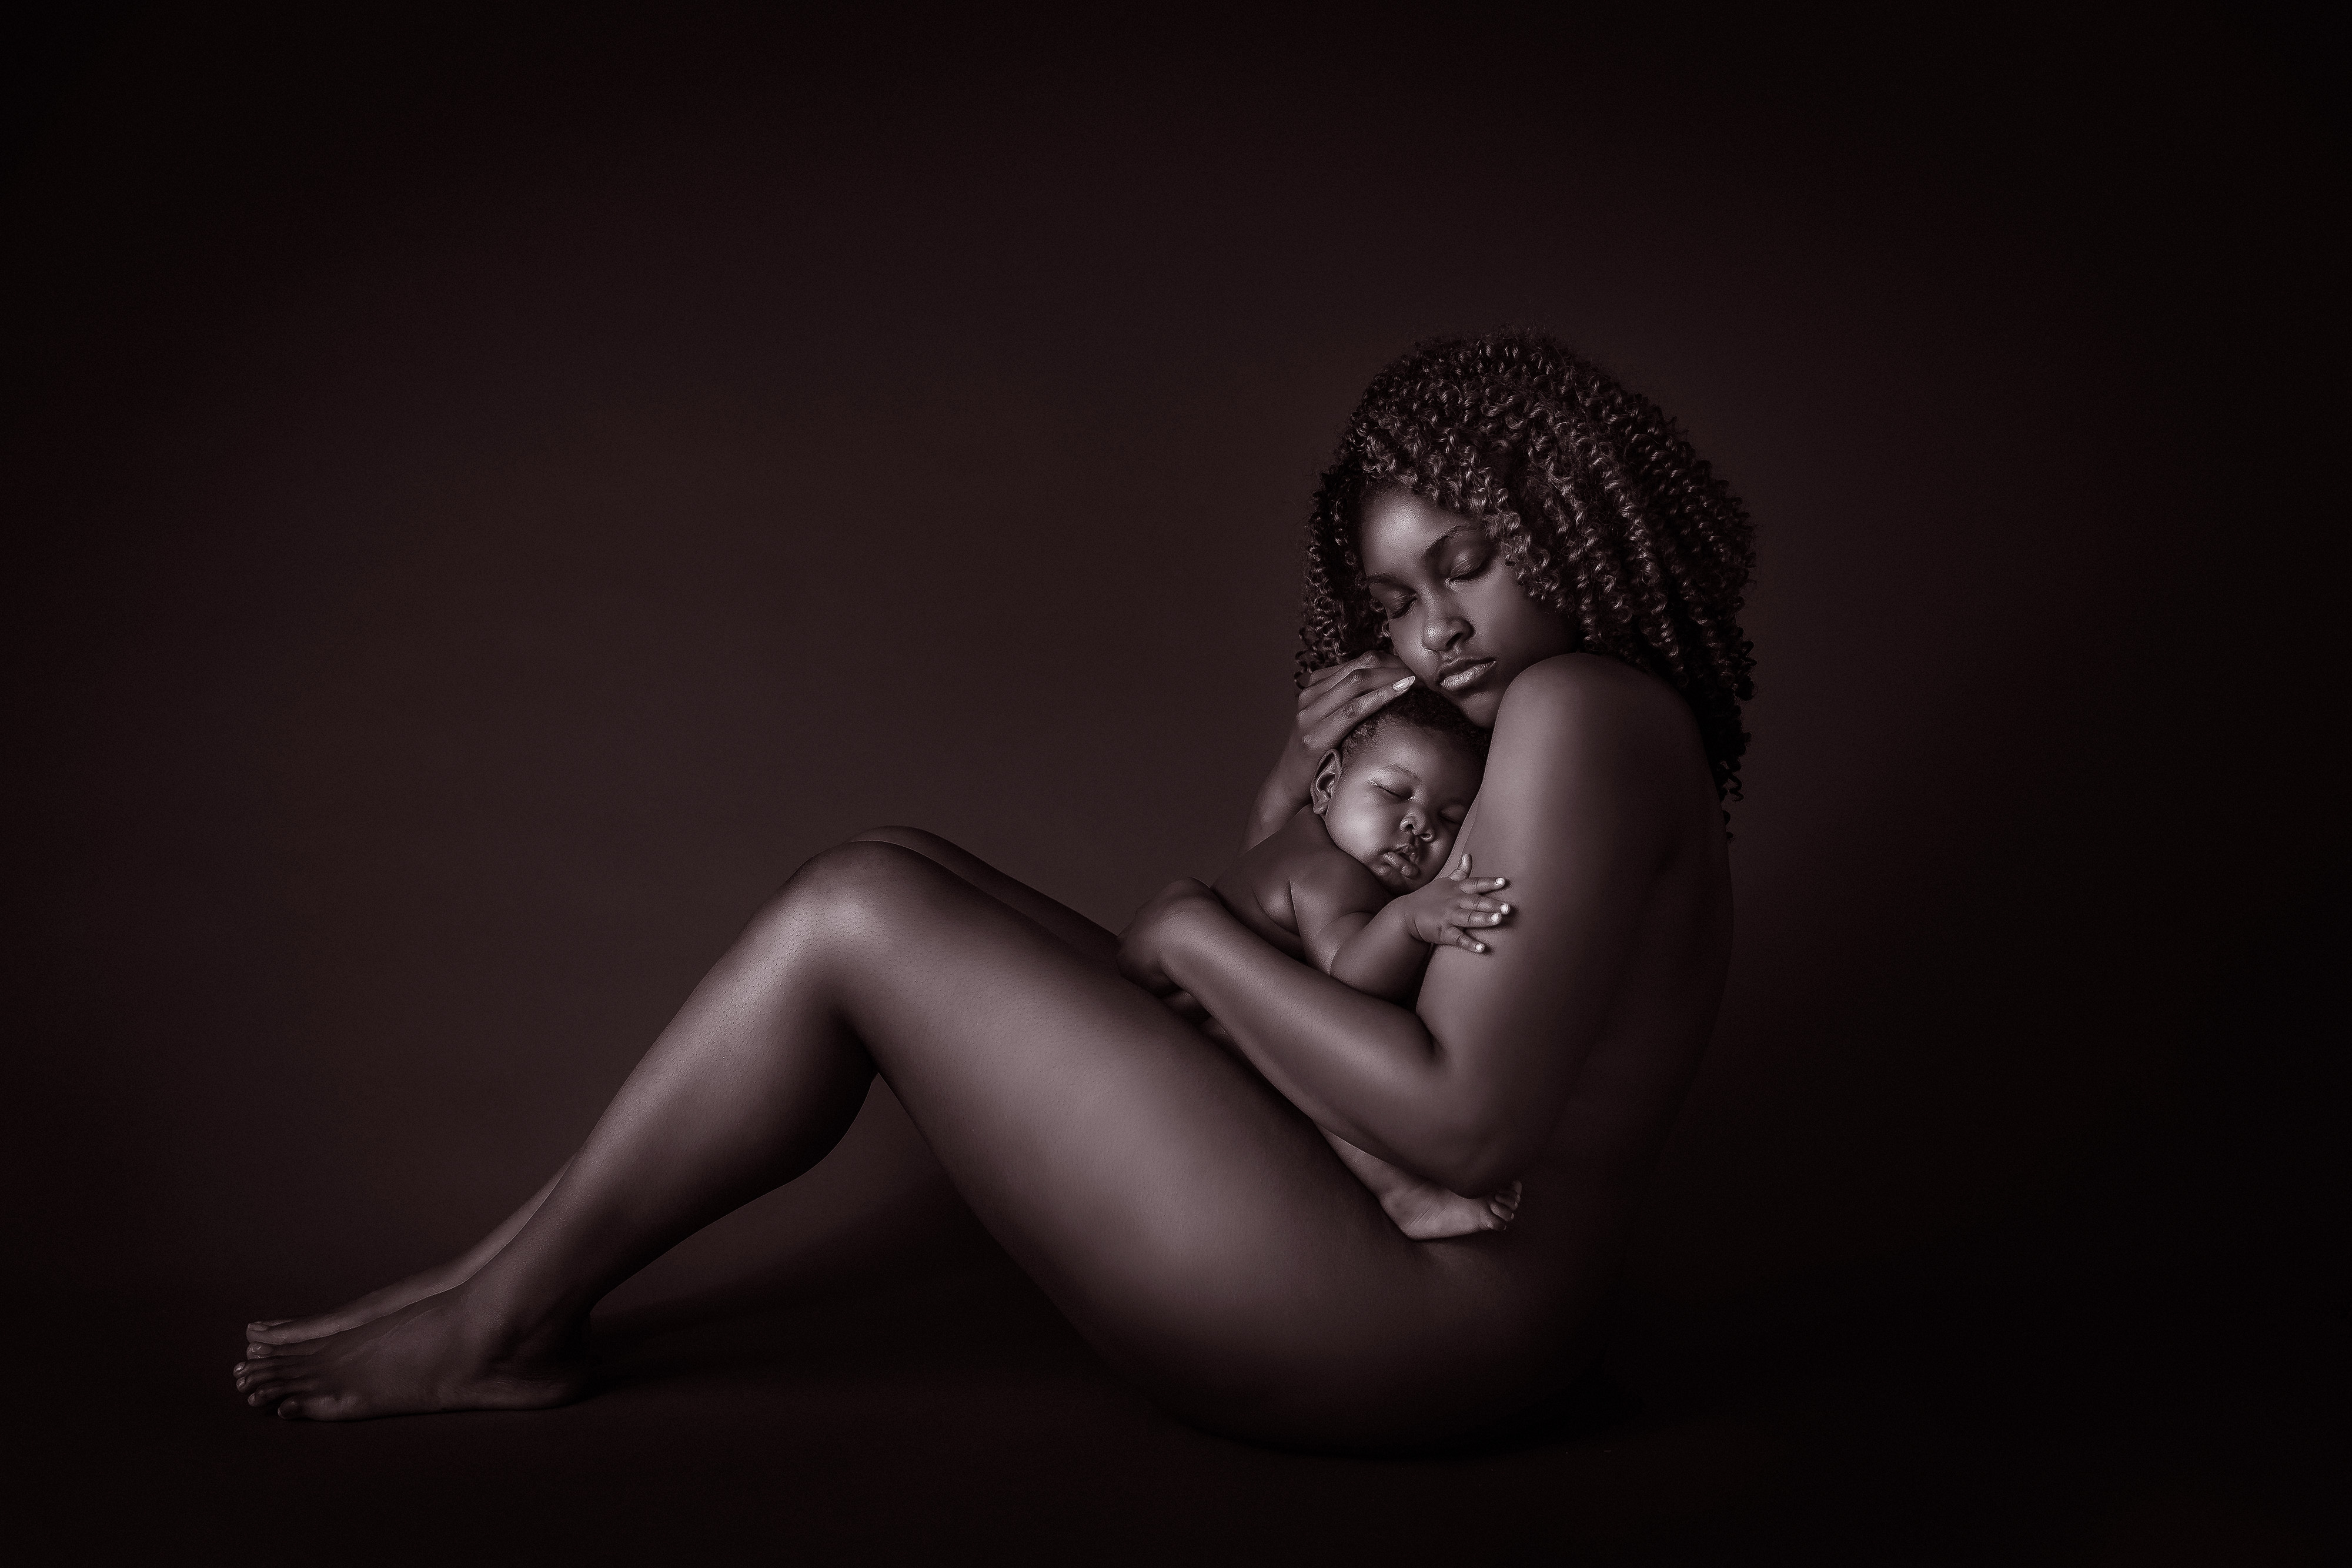 mother baby nude studio portrait